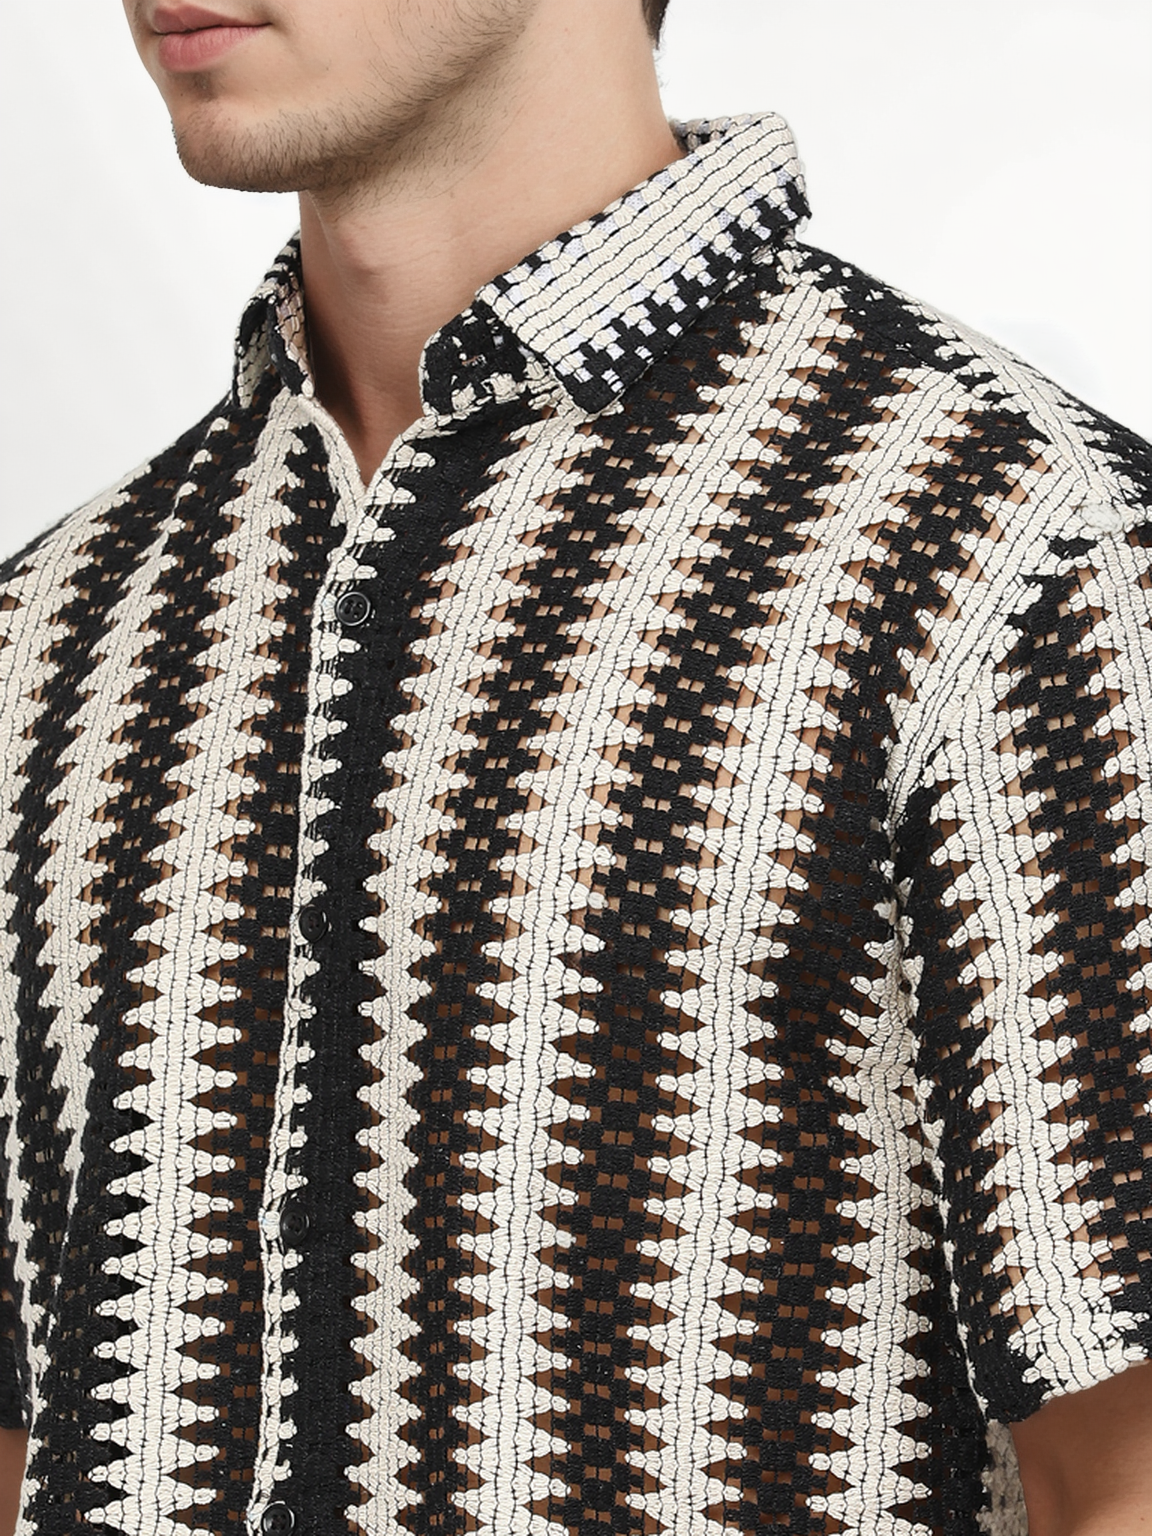 Hemsters Threaded Crochet Shirt Black & White Color Shirt